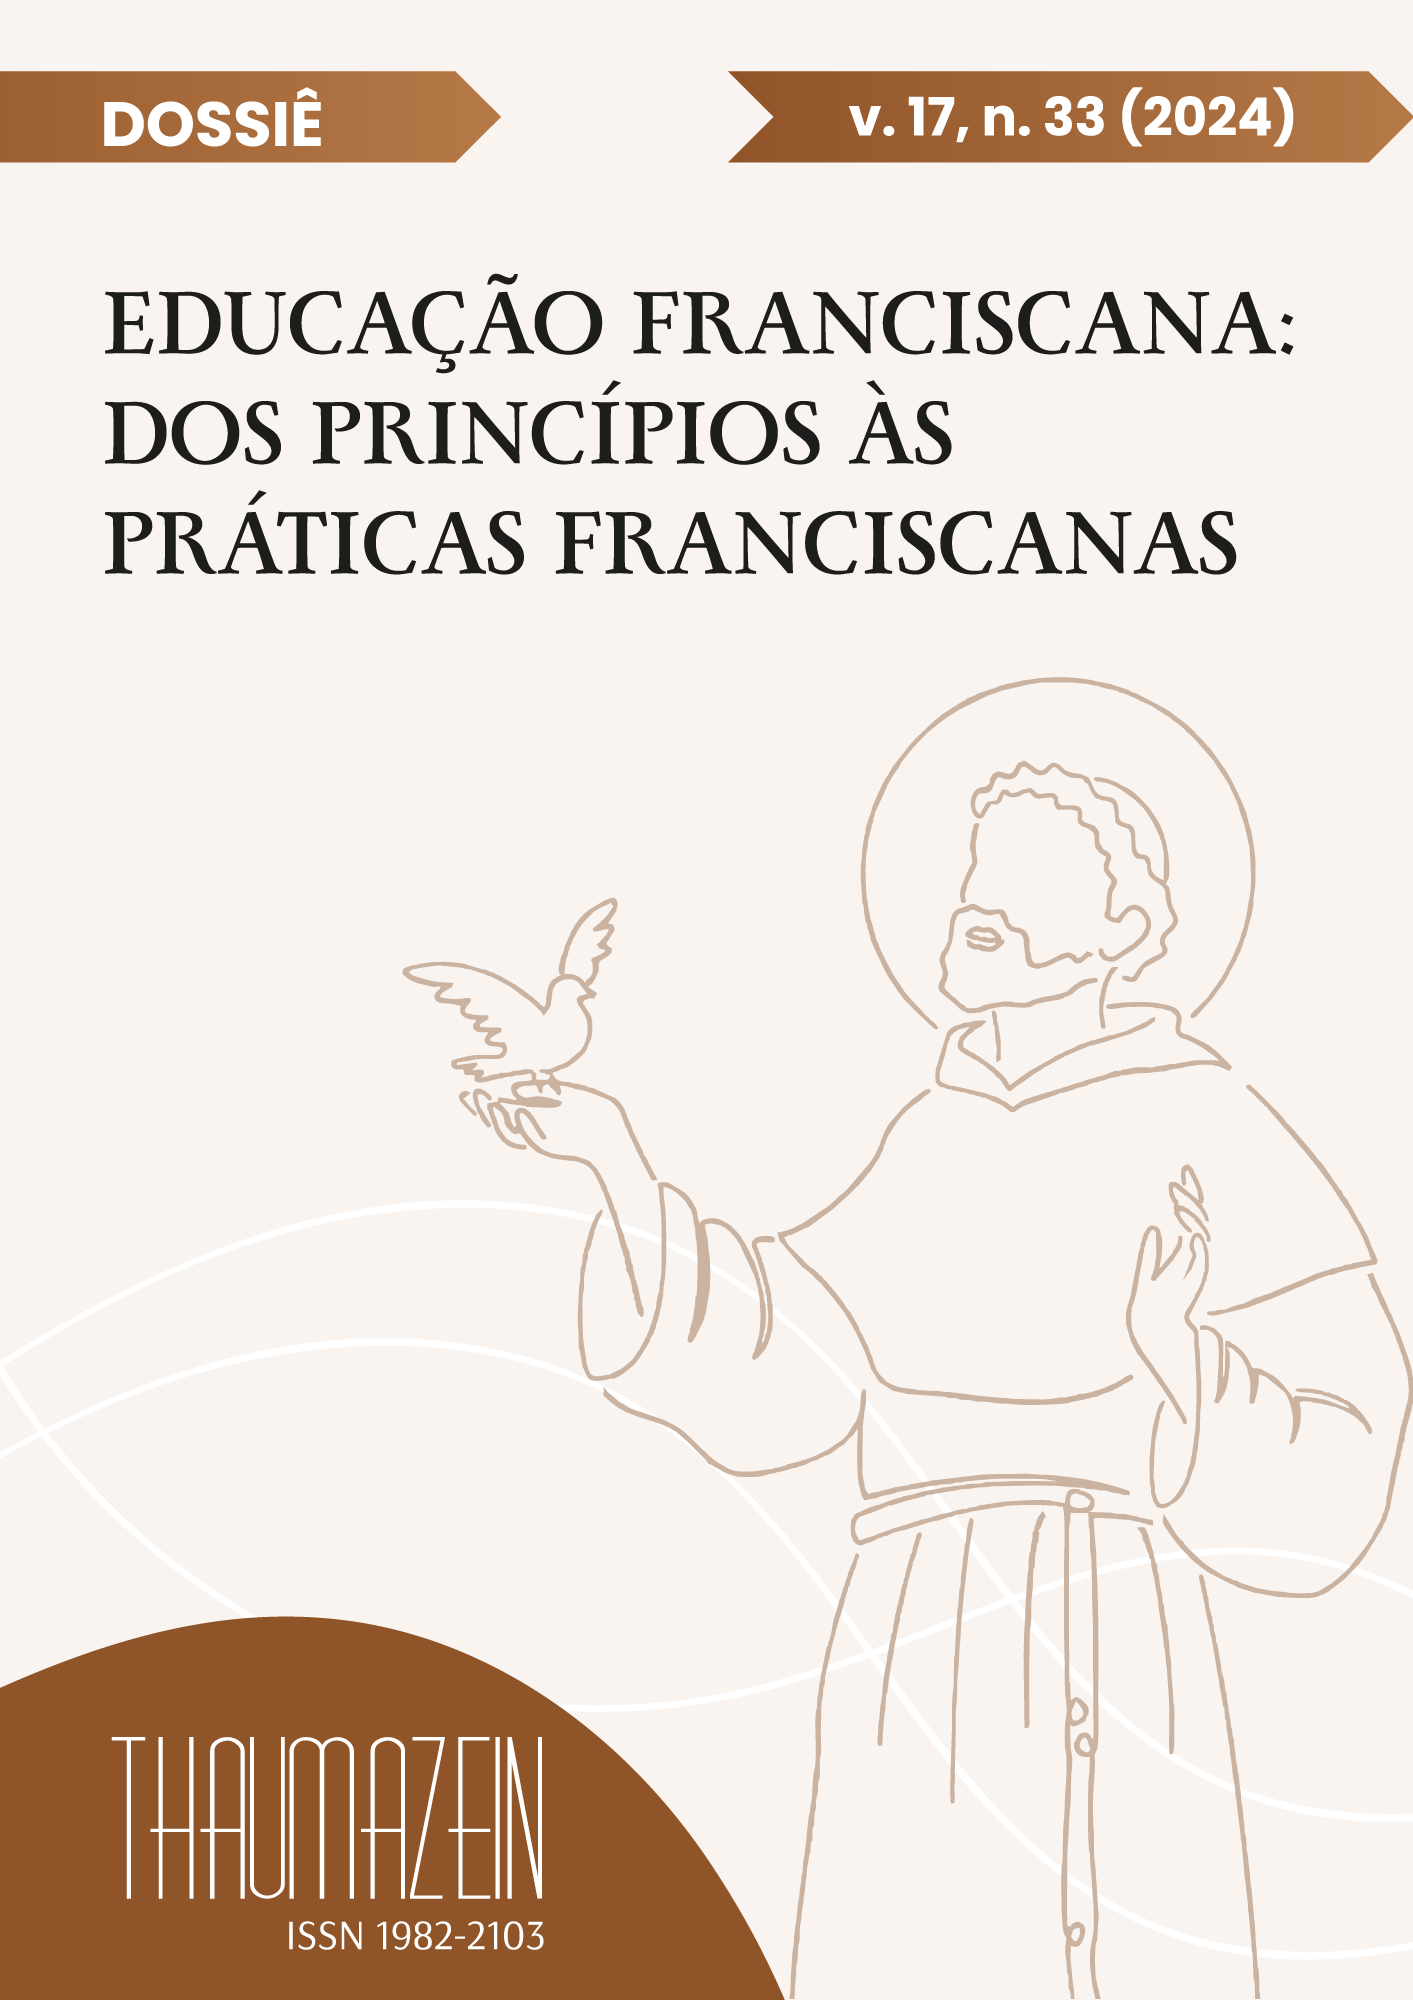 					Ver Vol. 17 Núm. 33 (2024): Dossiê: Educação Franciscana: dos princípios às práticas
				